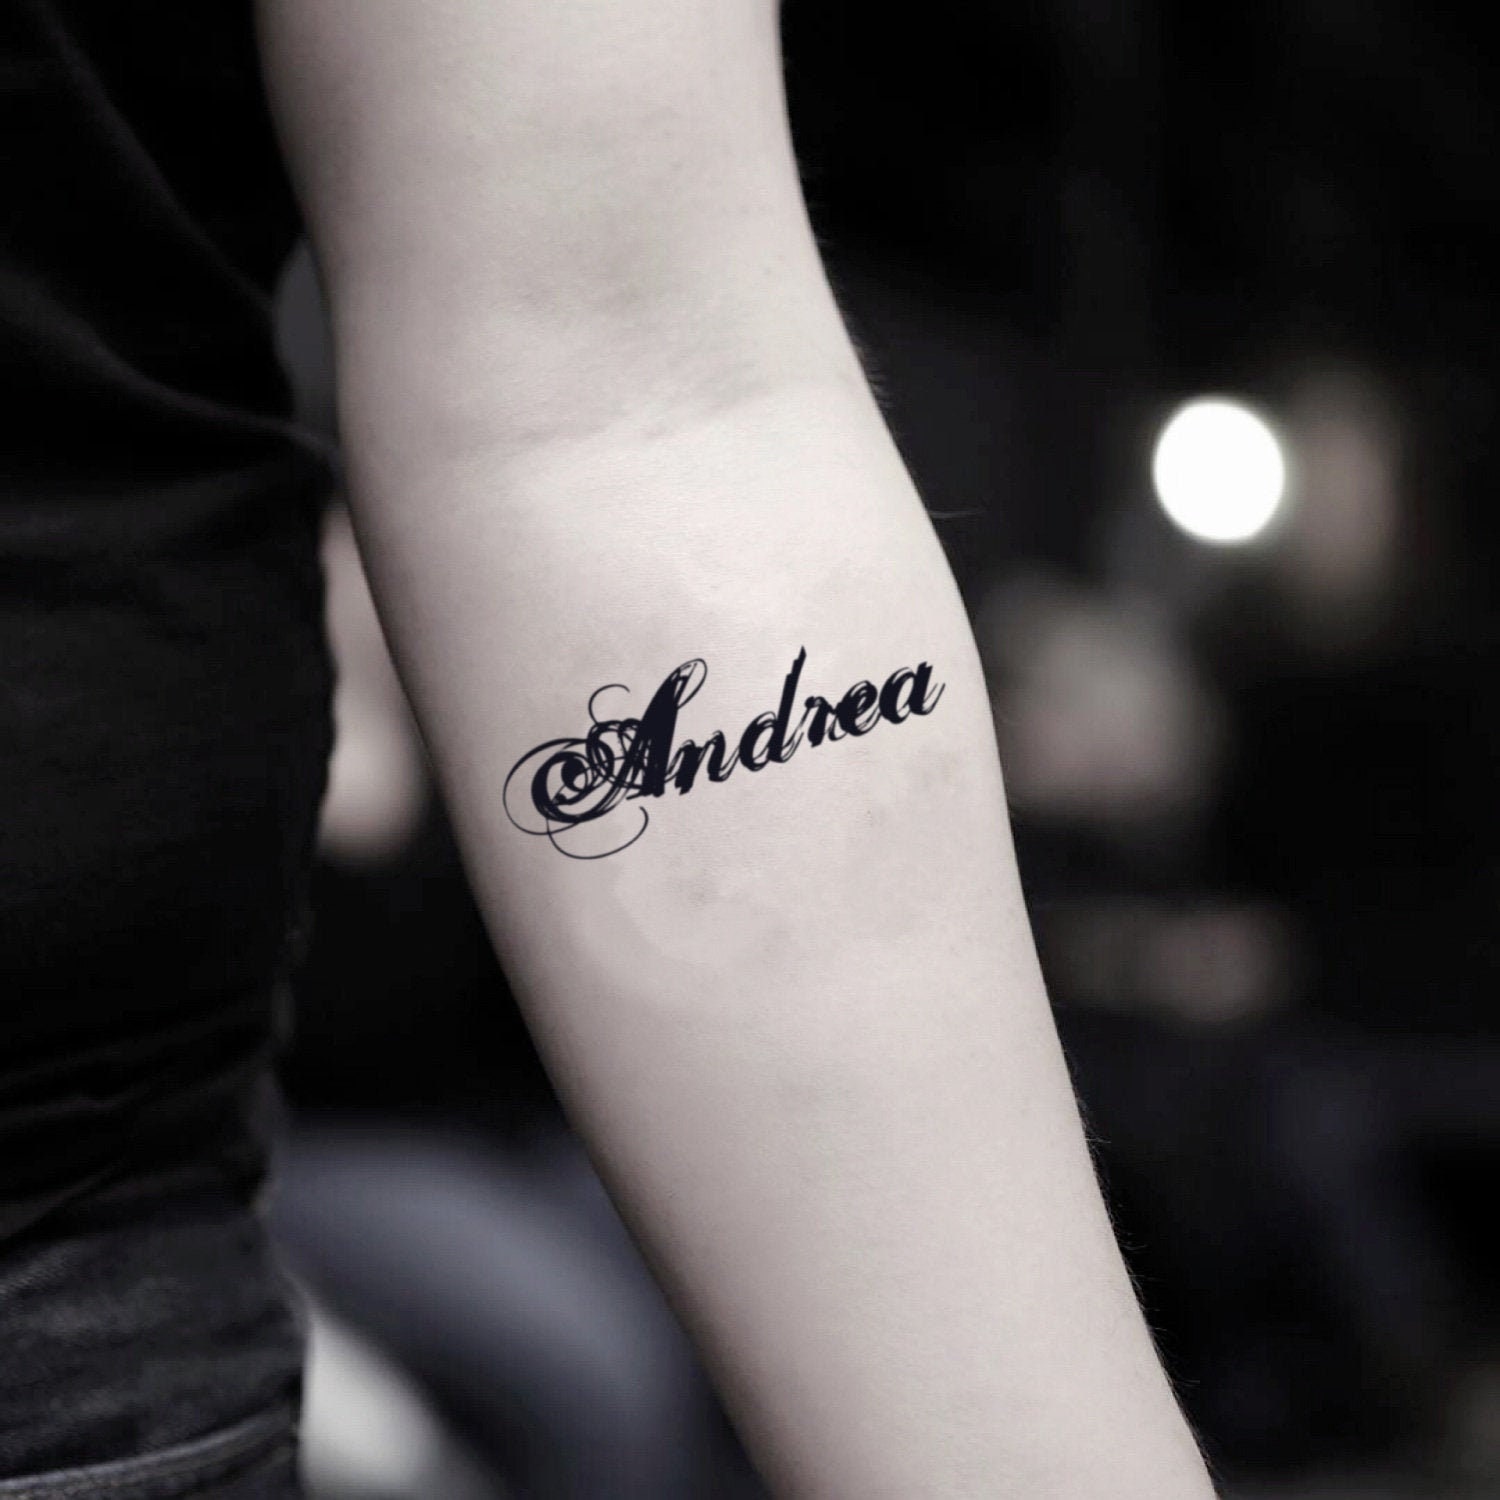 Sin on skin tattoo studio Amol ❤️ - Sin On Skin Tattoo Studio | Facebook